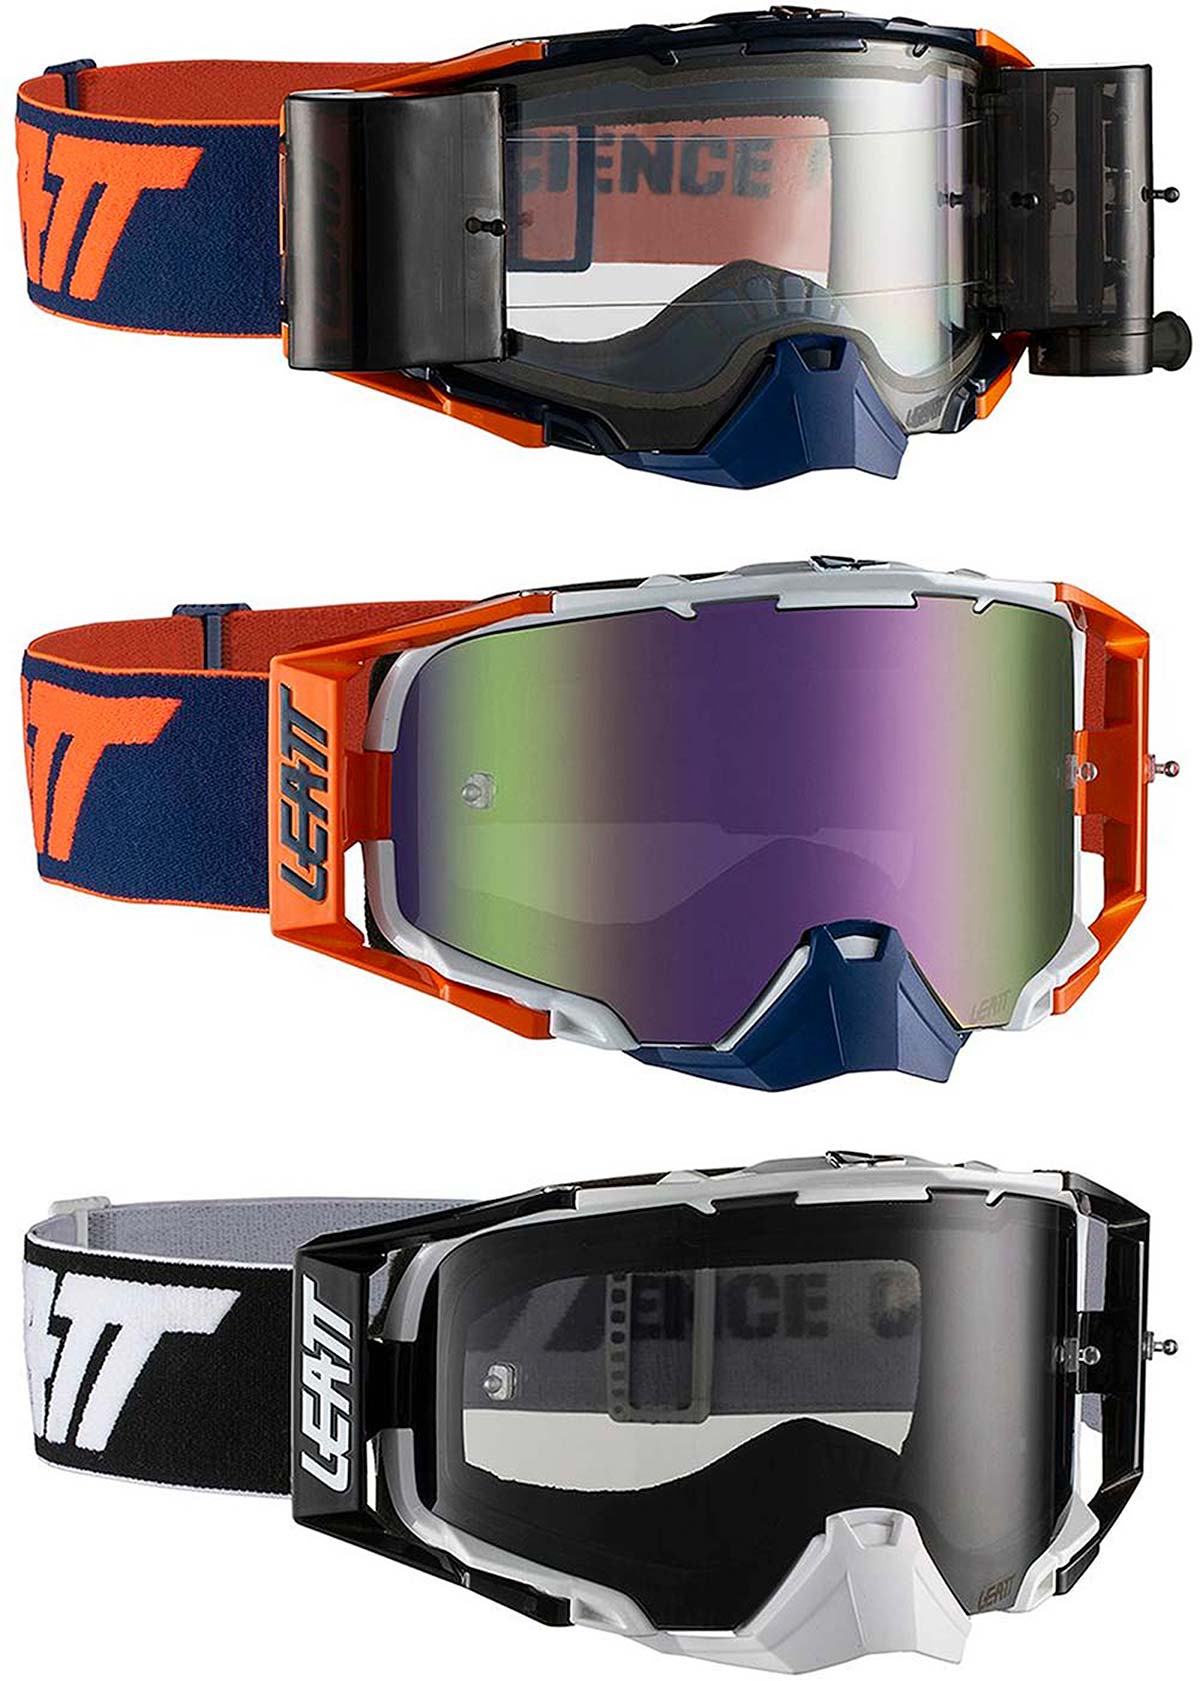 En TodoMountainBike: Leatt presenta las Velocity 6.5, unas gafas de máscara con lente blindada de grado militar